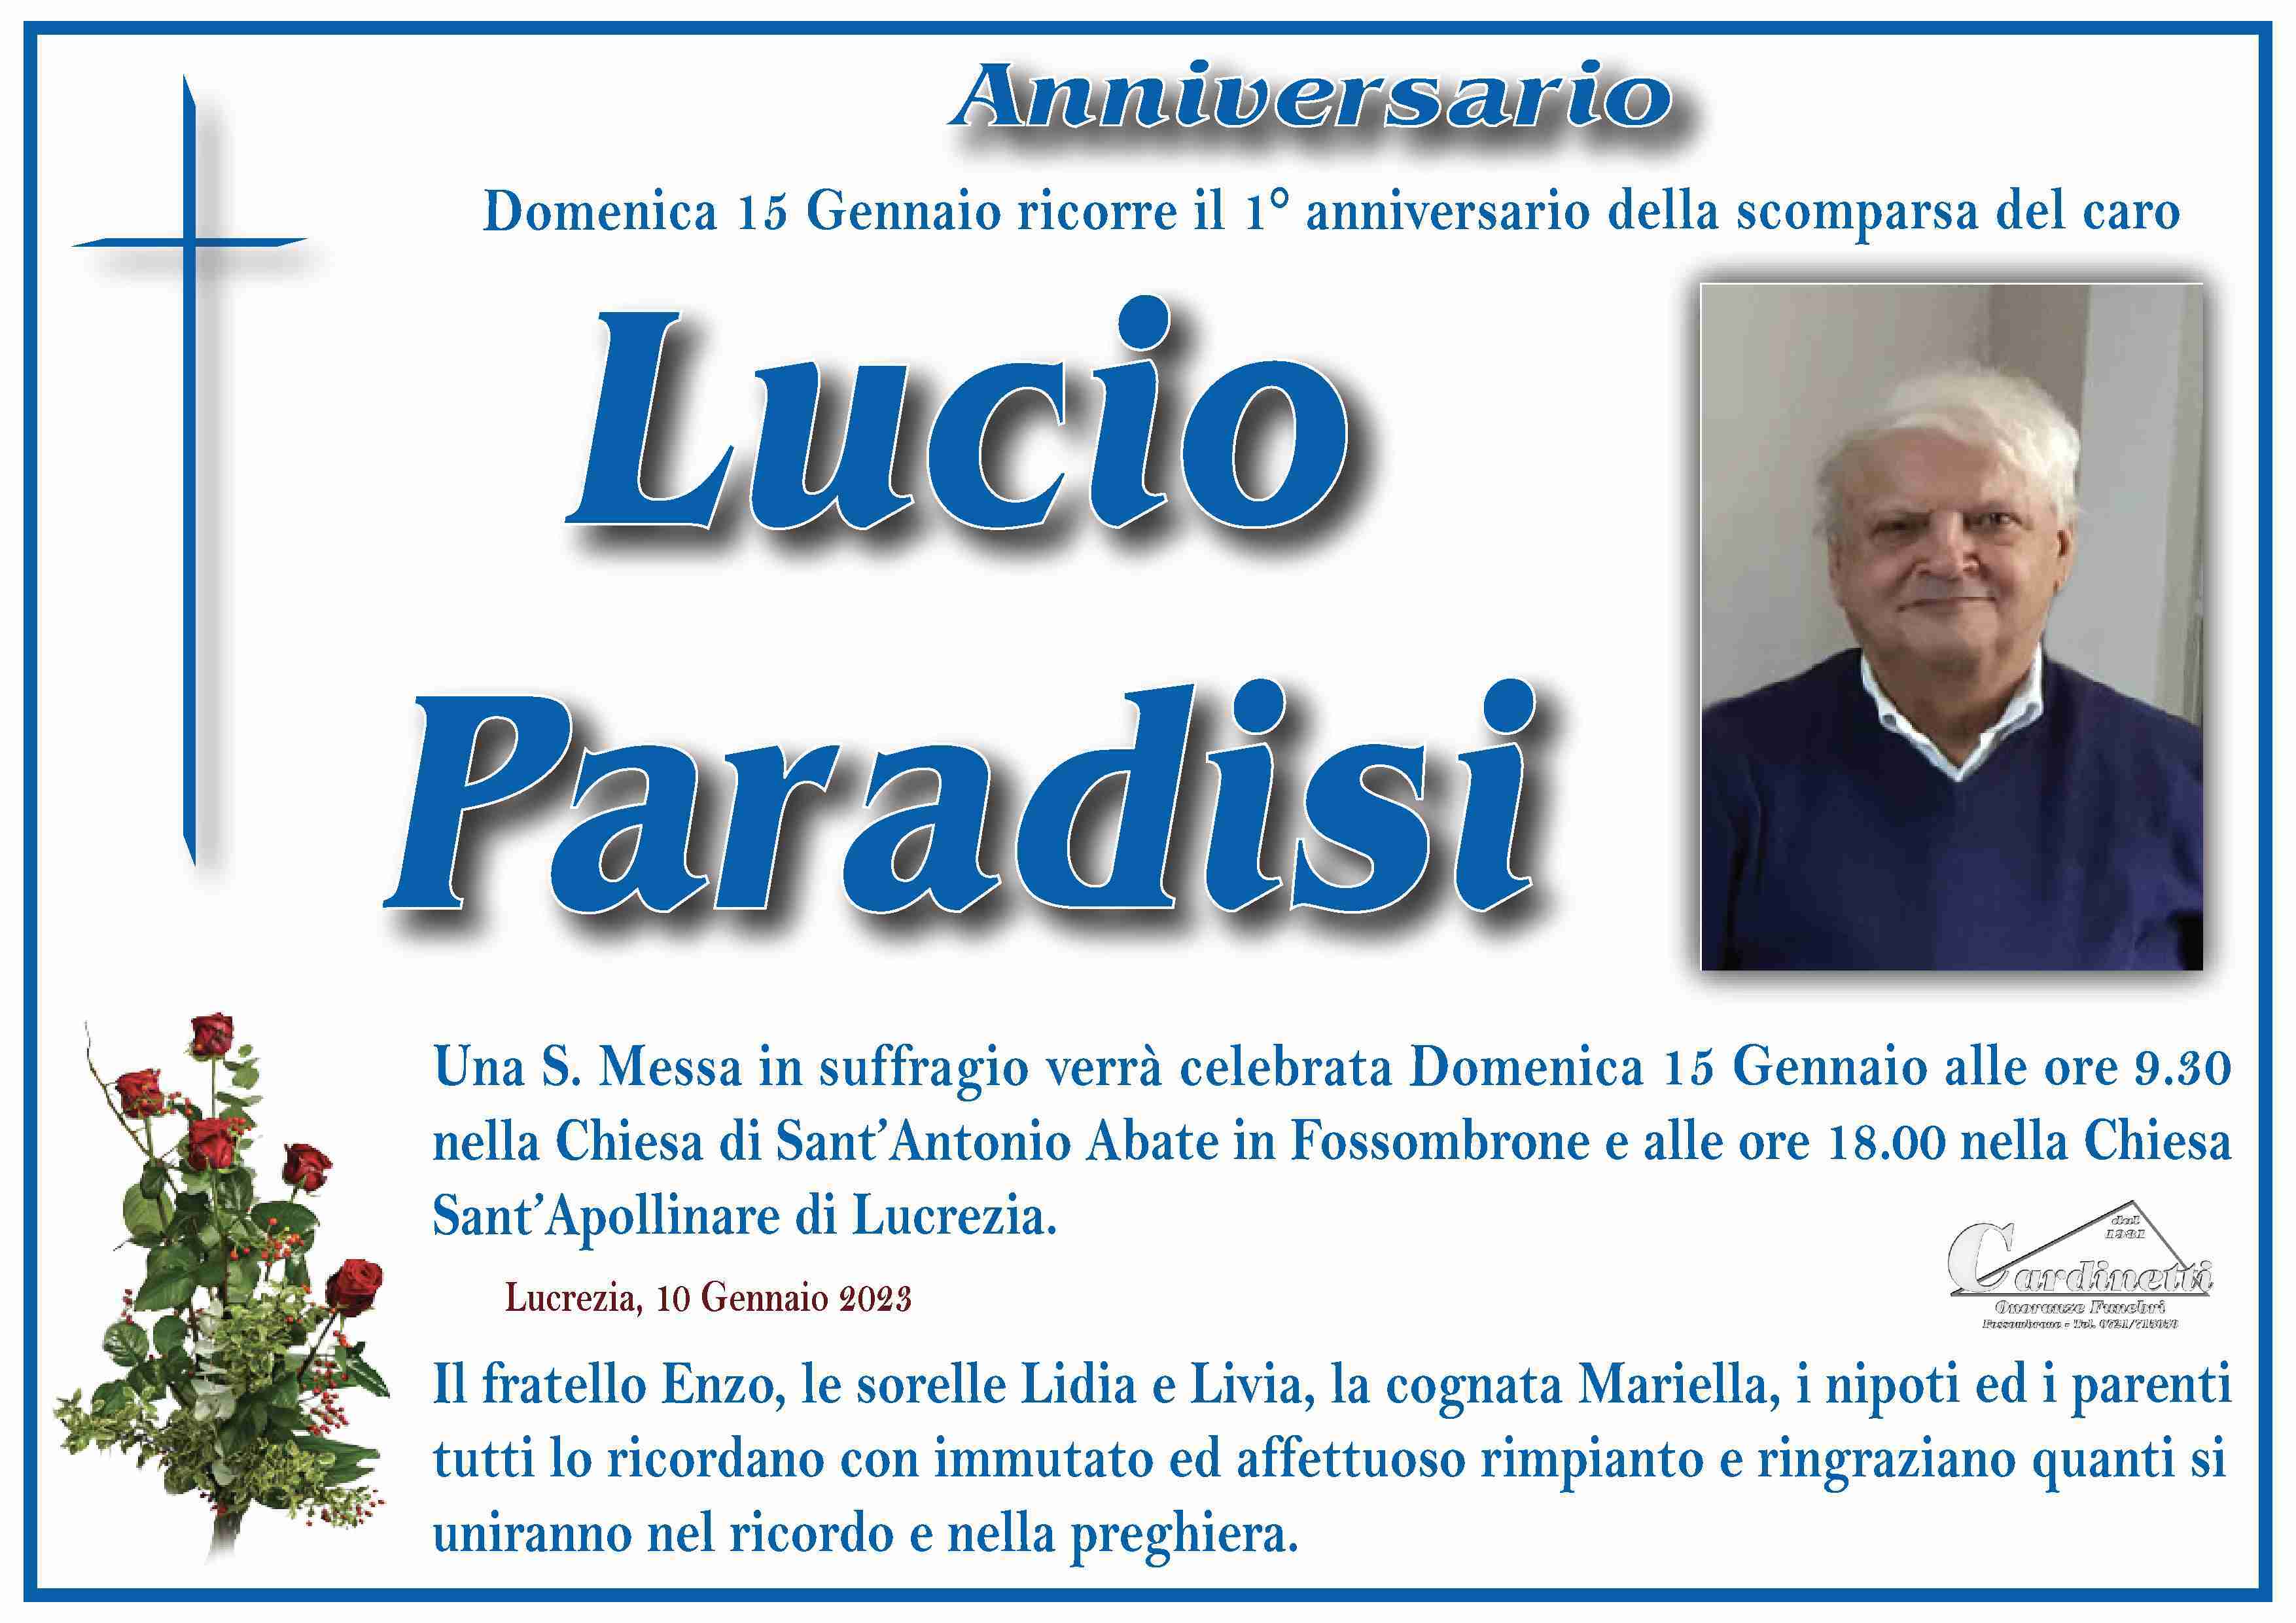 Lucio Paradisi